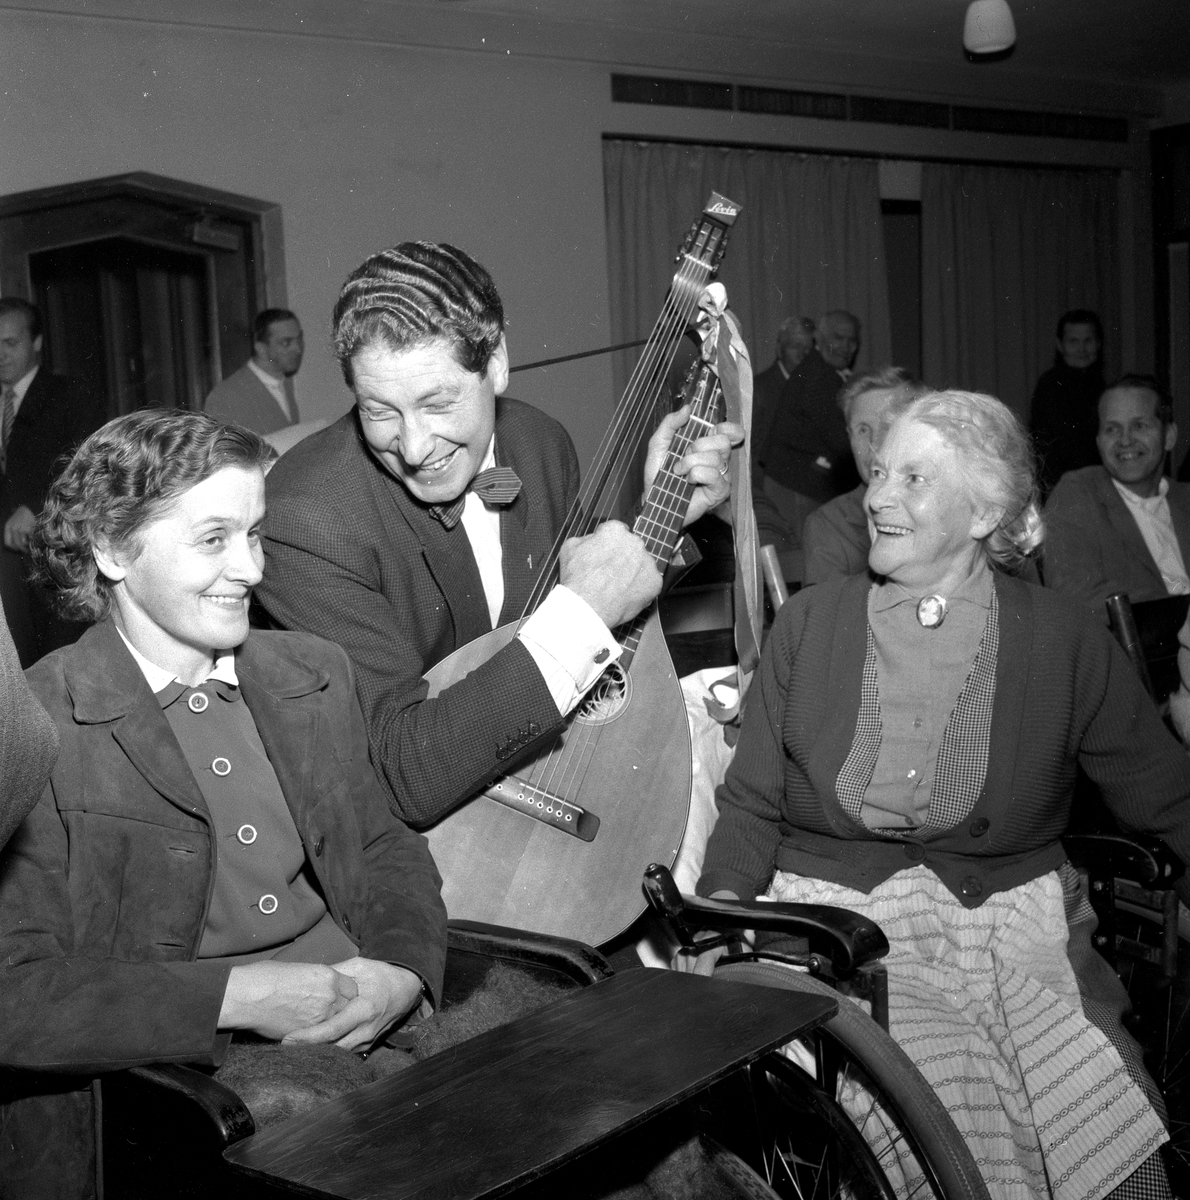 Ellen Dahl roar kroniskt sjuka.
December 1956.